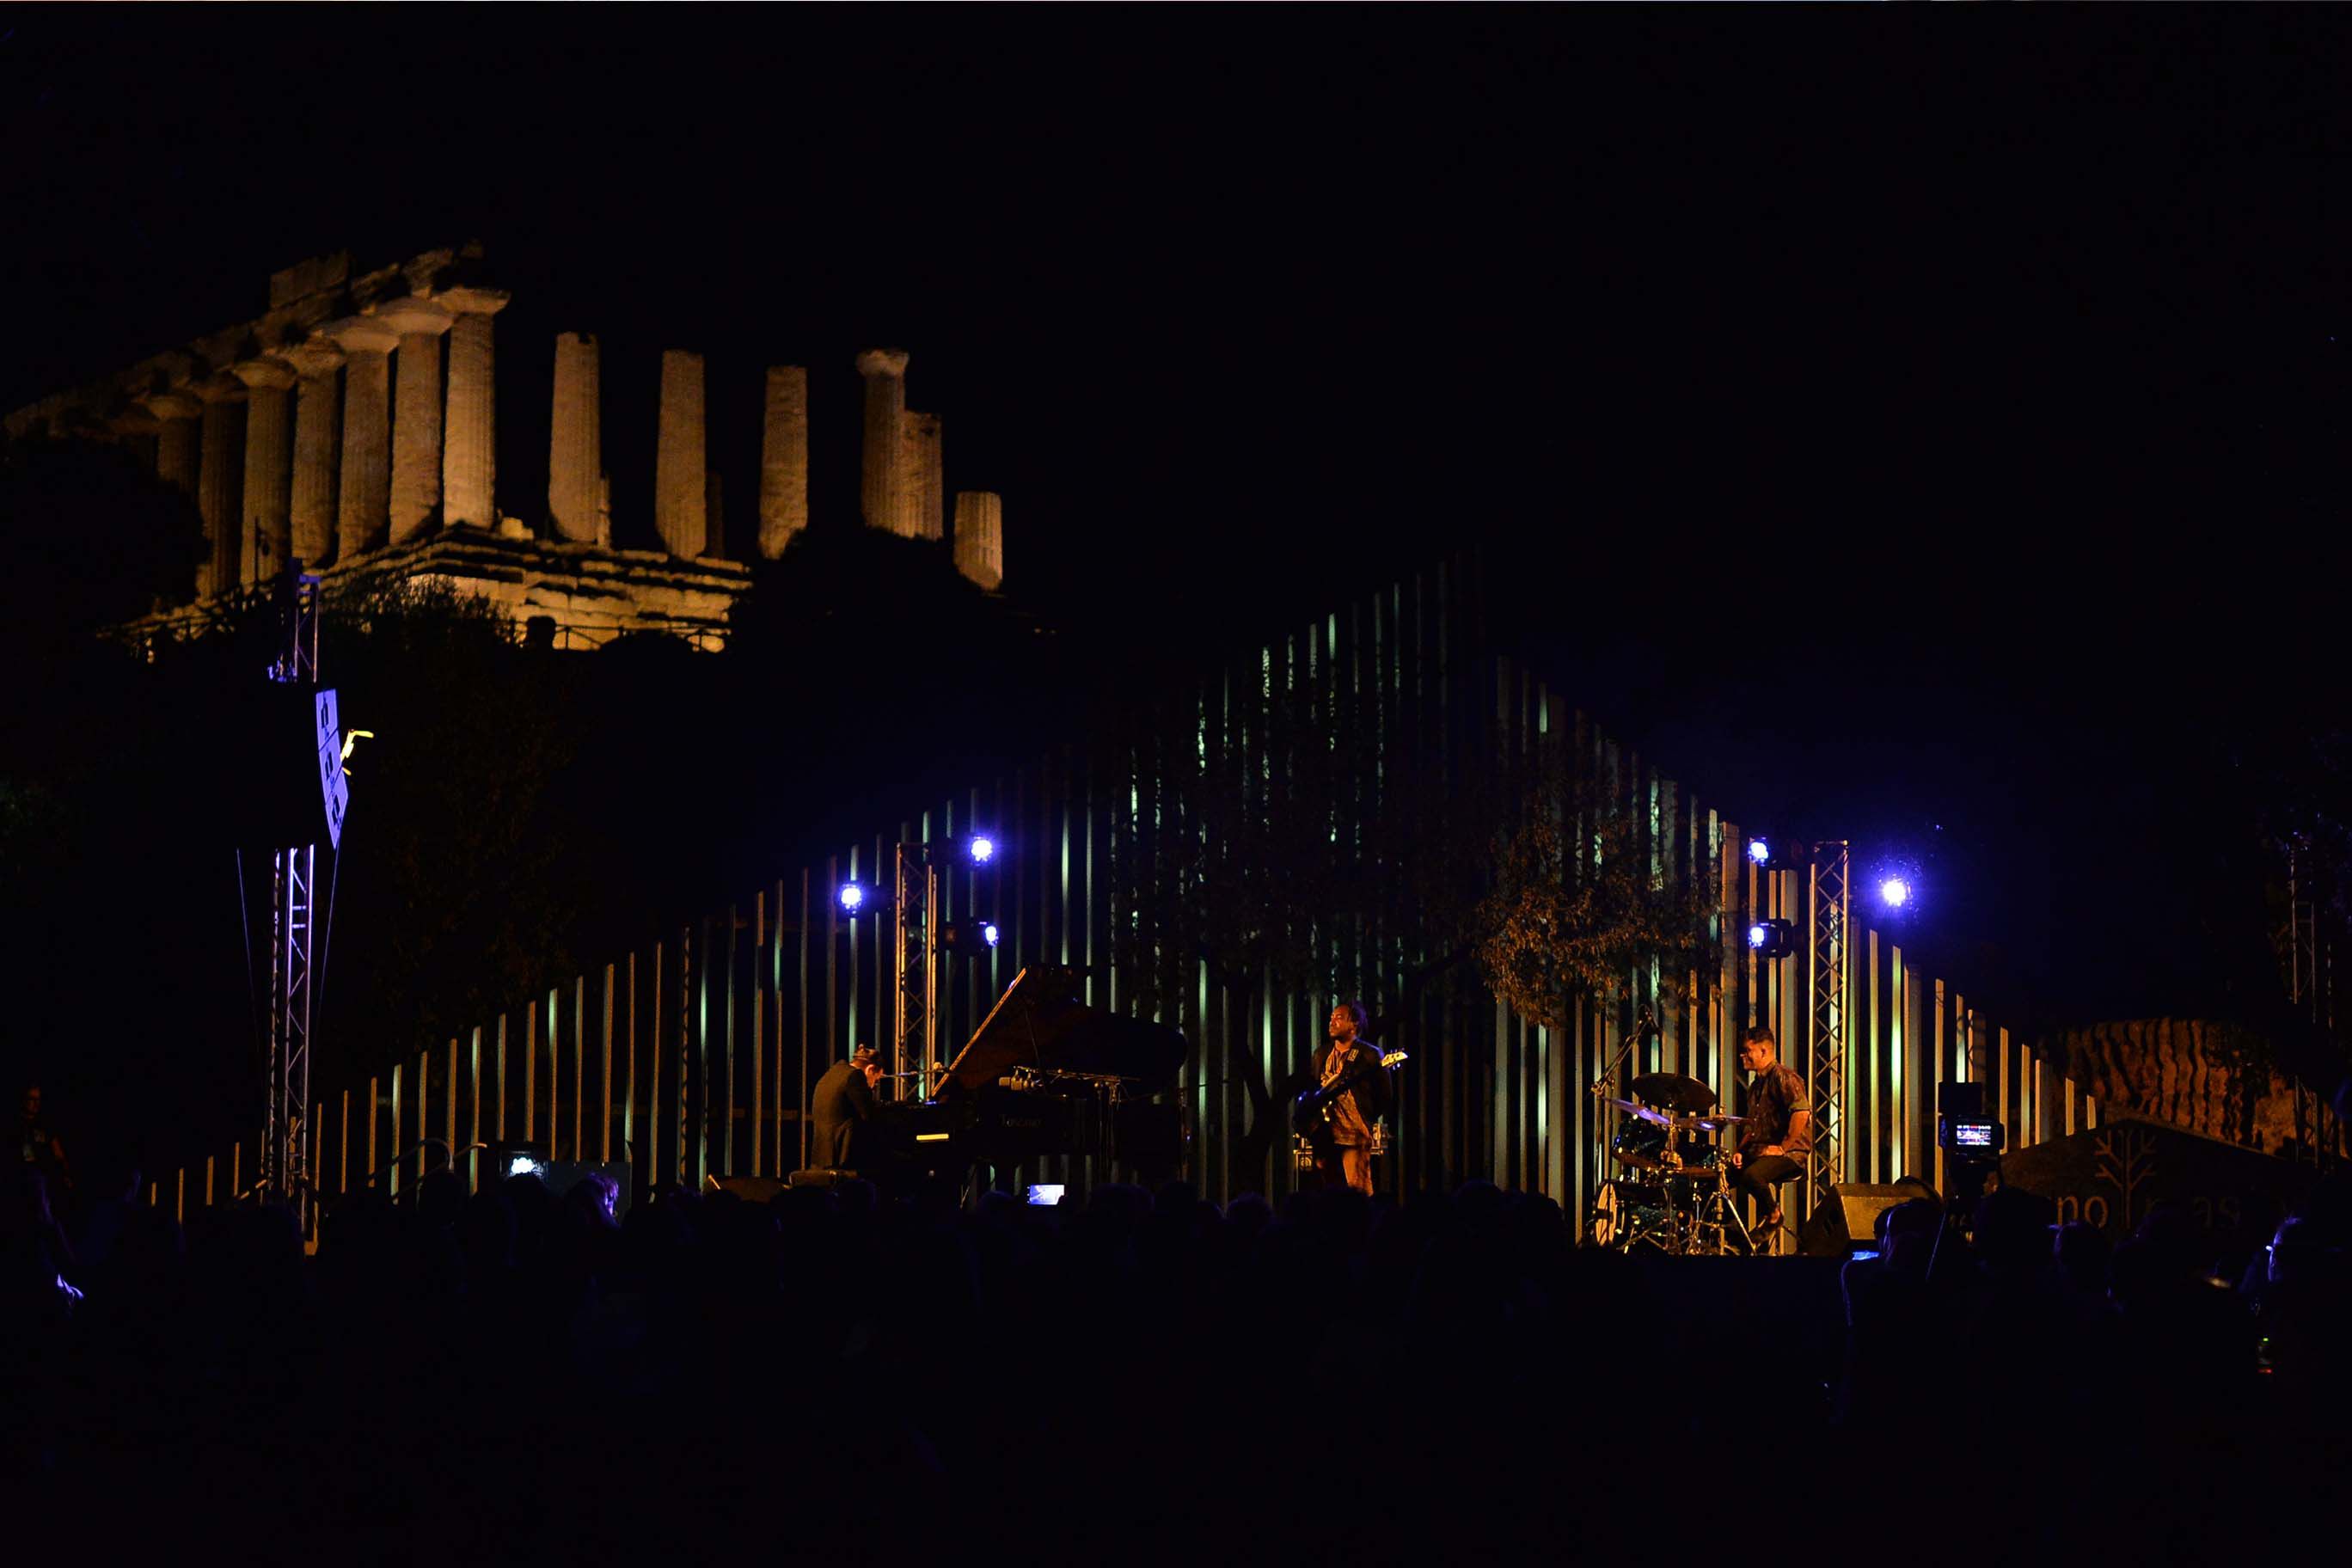 È buio, in uno spazio aperto sullo sfondo ci sono delle rovine antiche, un templio con delle colonne illuminate da fari. In primo piano una band di musicisti su un palco illuminato con un pubblico seduto davanti al buio. 